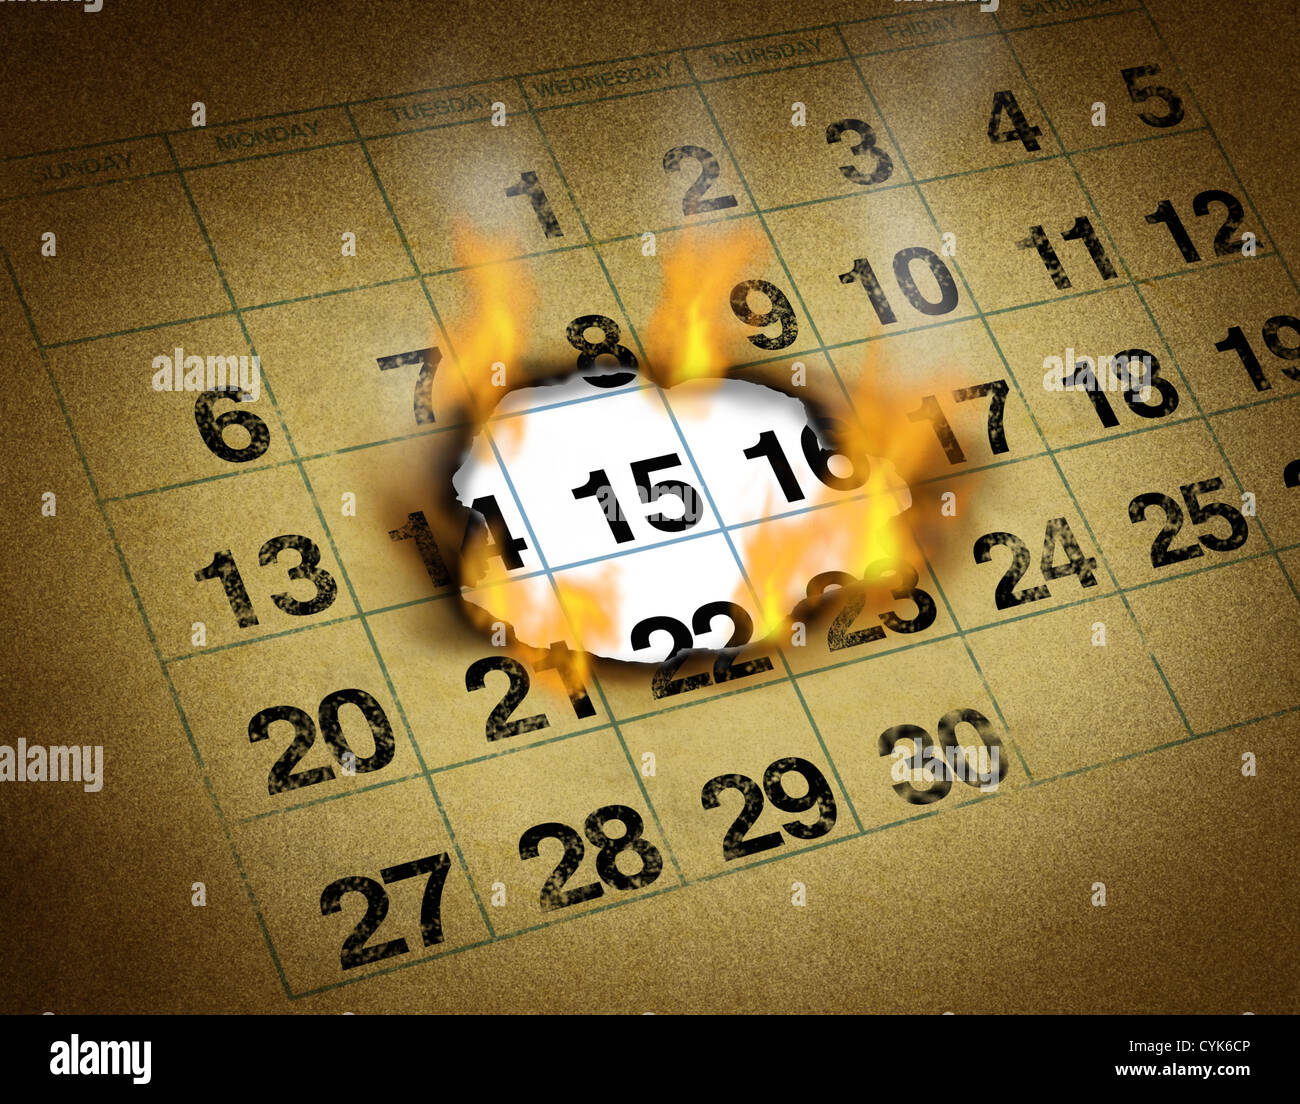 Setzen ein wichtiges heißes Date in einem Grunge-Kalender auf Feuer brennen ein Loch zu erinnern und markieren einen Tag des Monats repräsentieren wichtige dringende Zeit und Zeitplan Erinnerung zu organisieren. Stockfoto